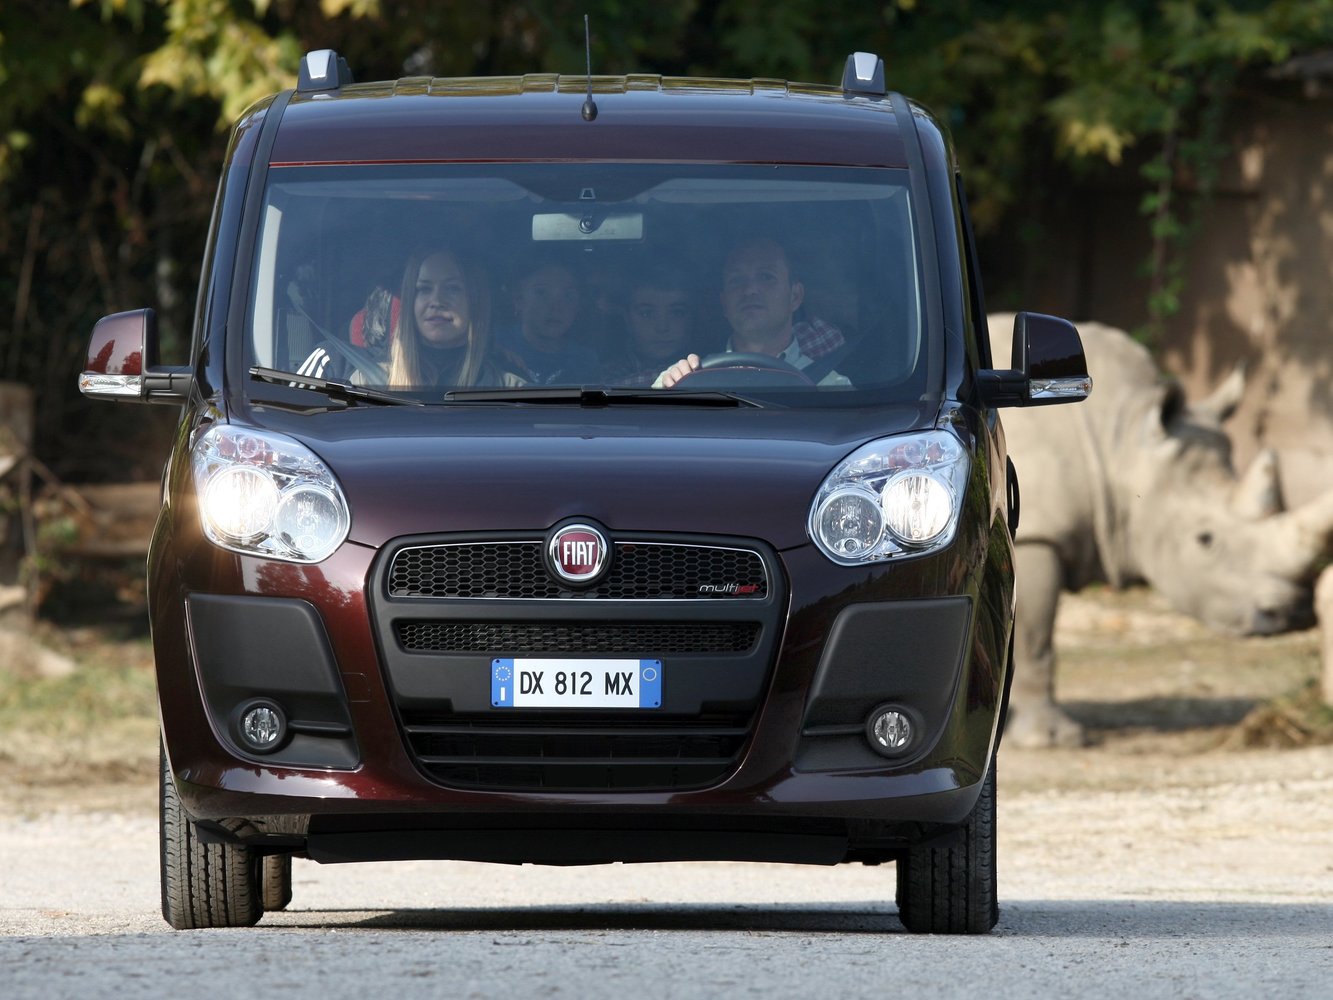 минивэн Fiat Doblo 2009 - 2014г выпуска модификация 1.2 AT (90 л.с.)